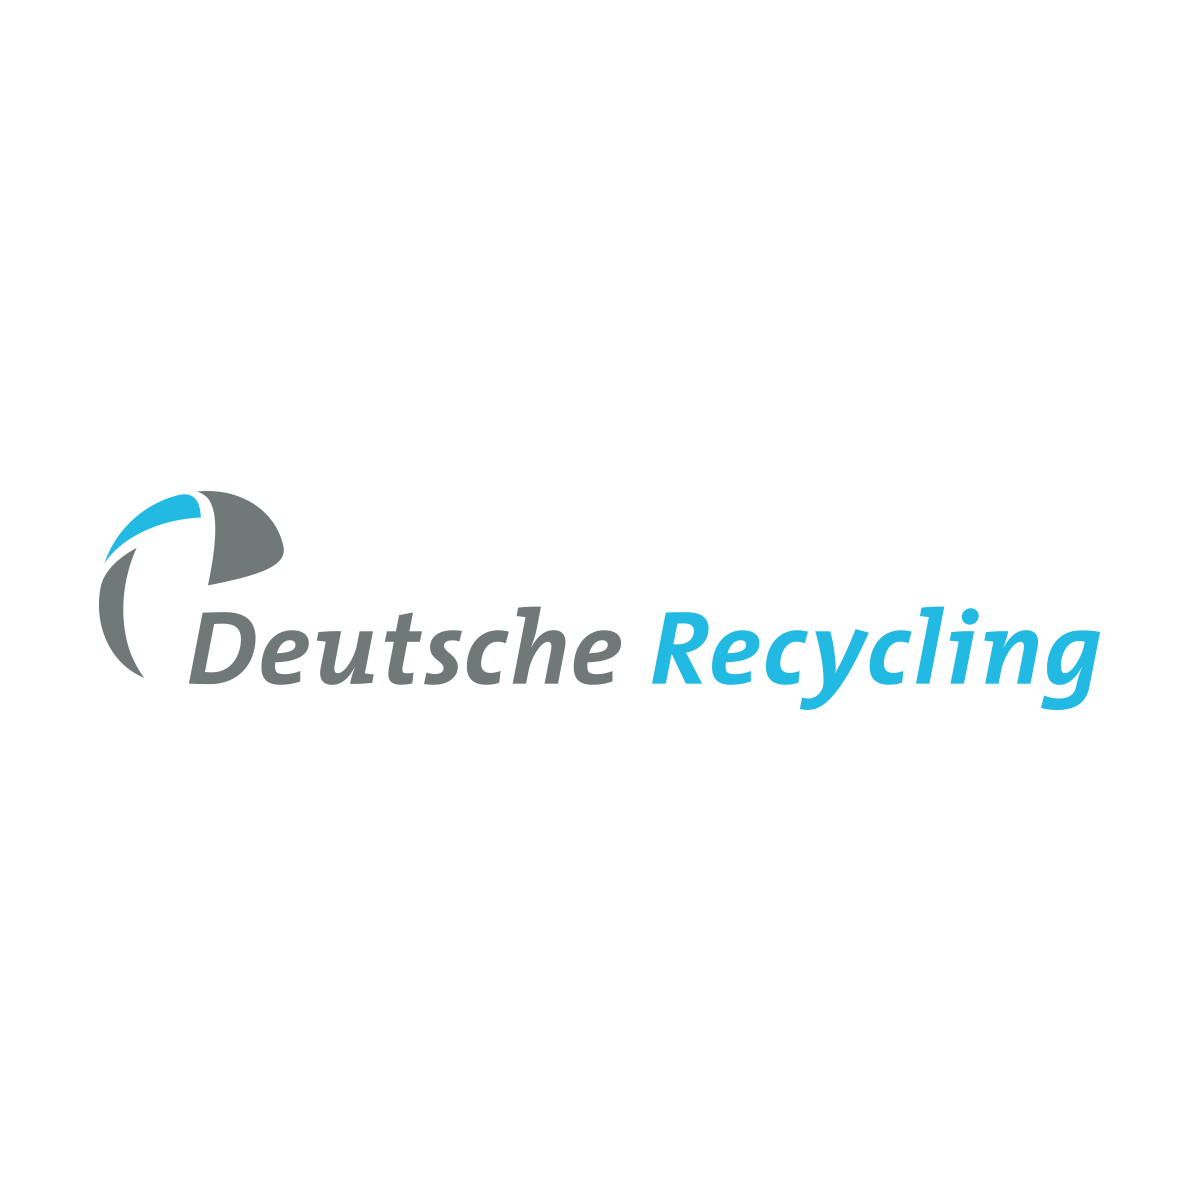 Deutsche Recycling